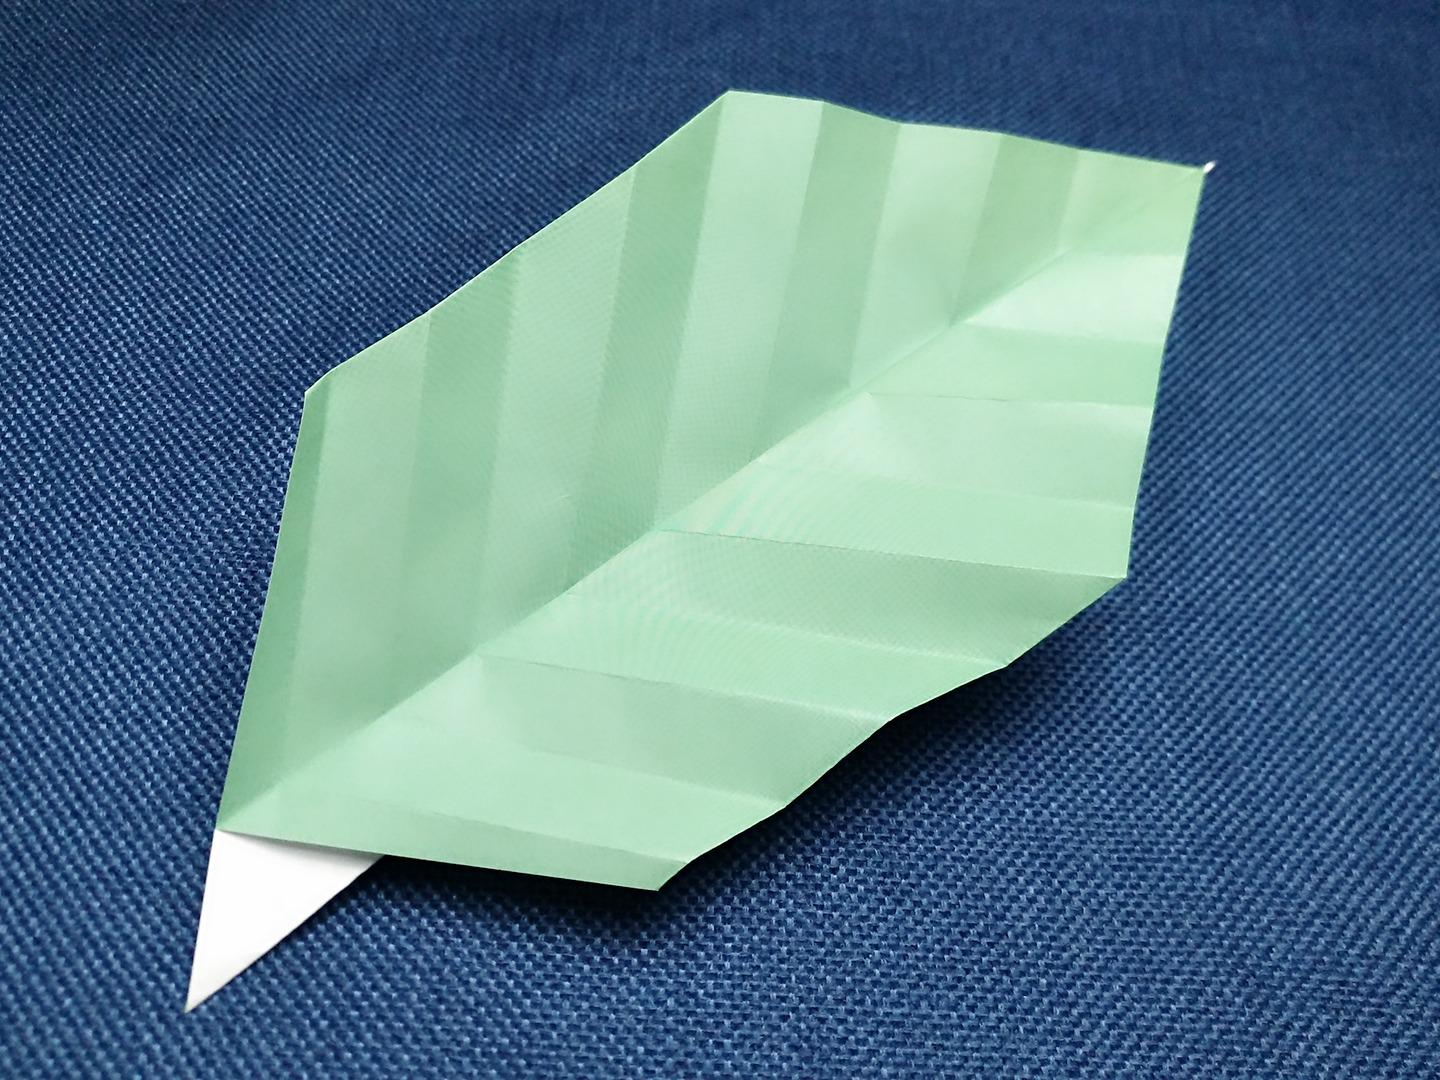 4折纸逼真树叶的制作方法  01:42  来源:百度经验-亲子手工之折纸树叶